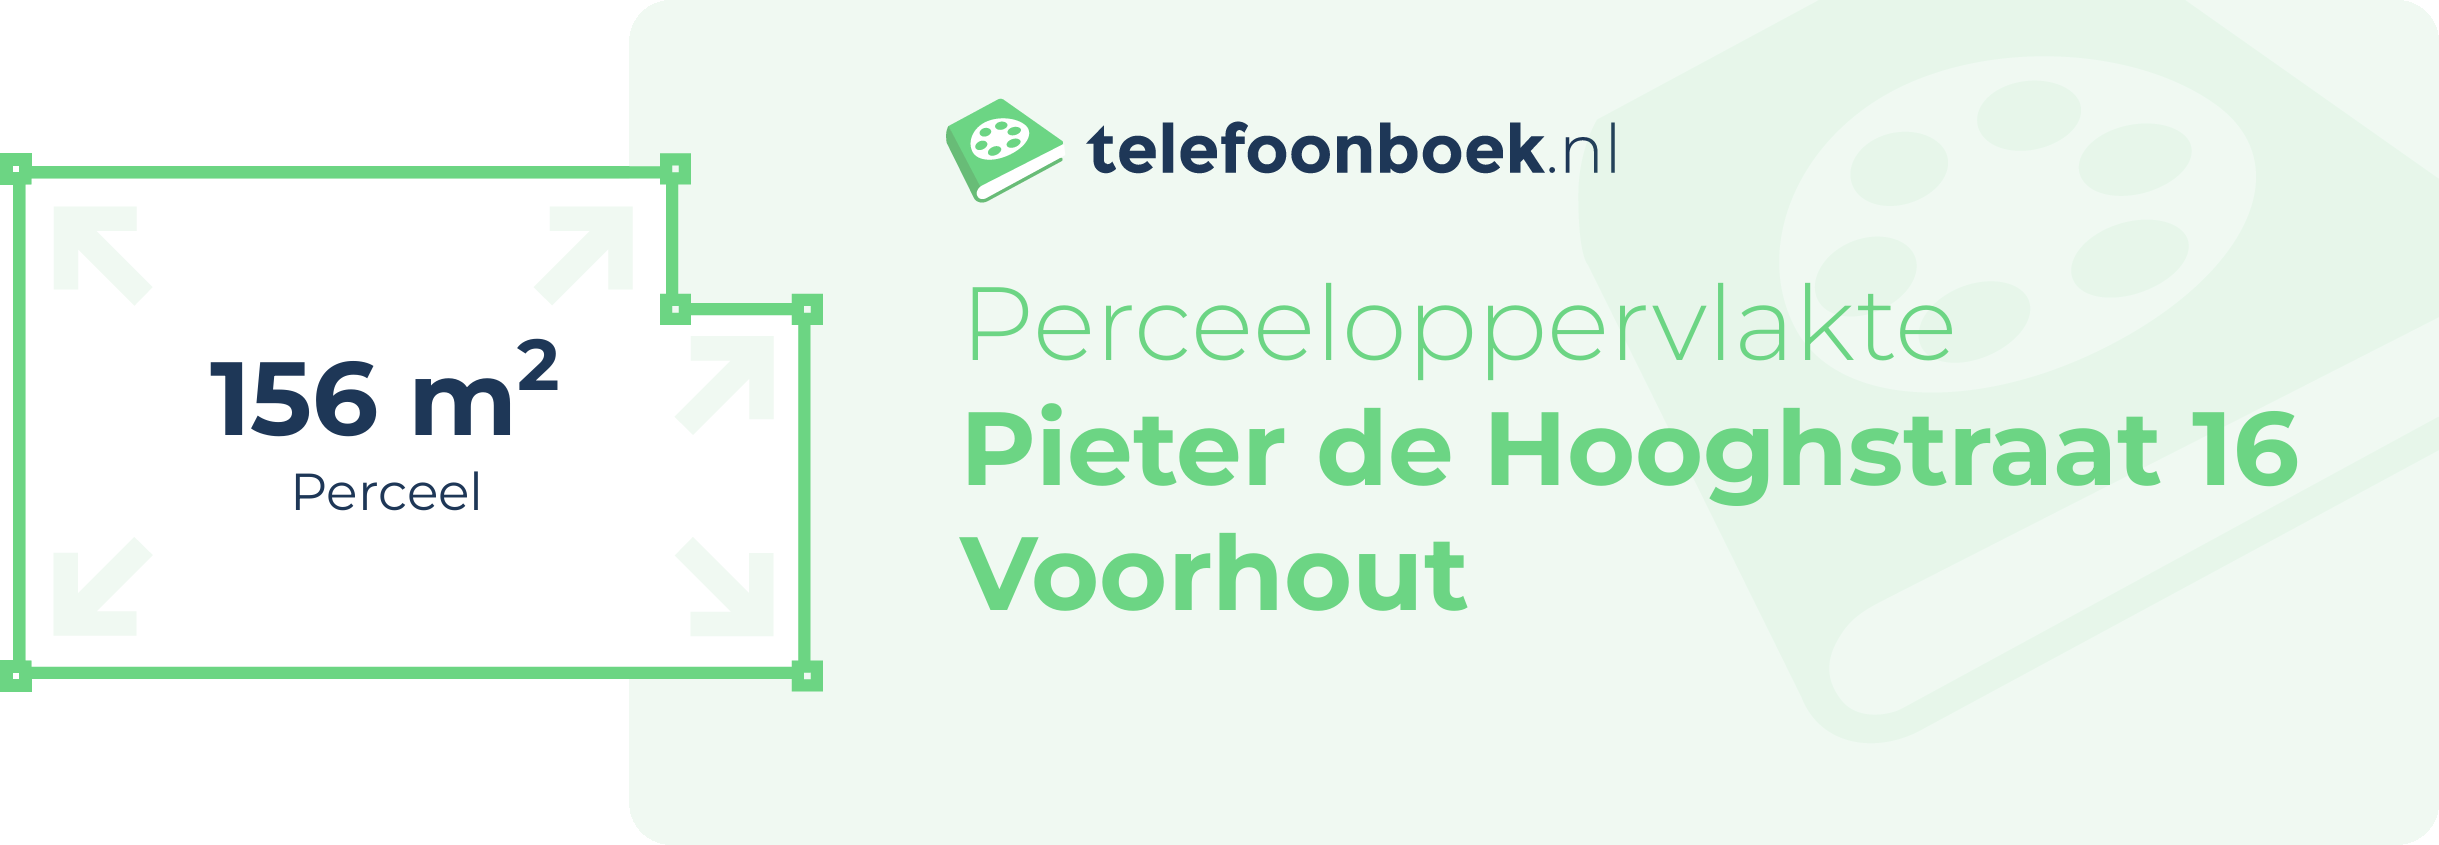 Perceeloppervlakte Pieter De Hooghstraat 16 Voorhout